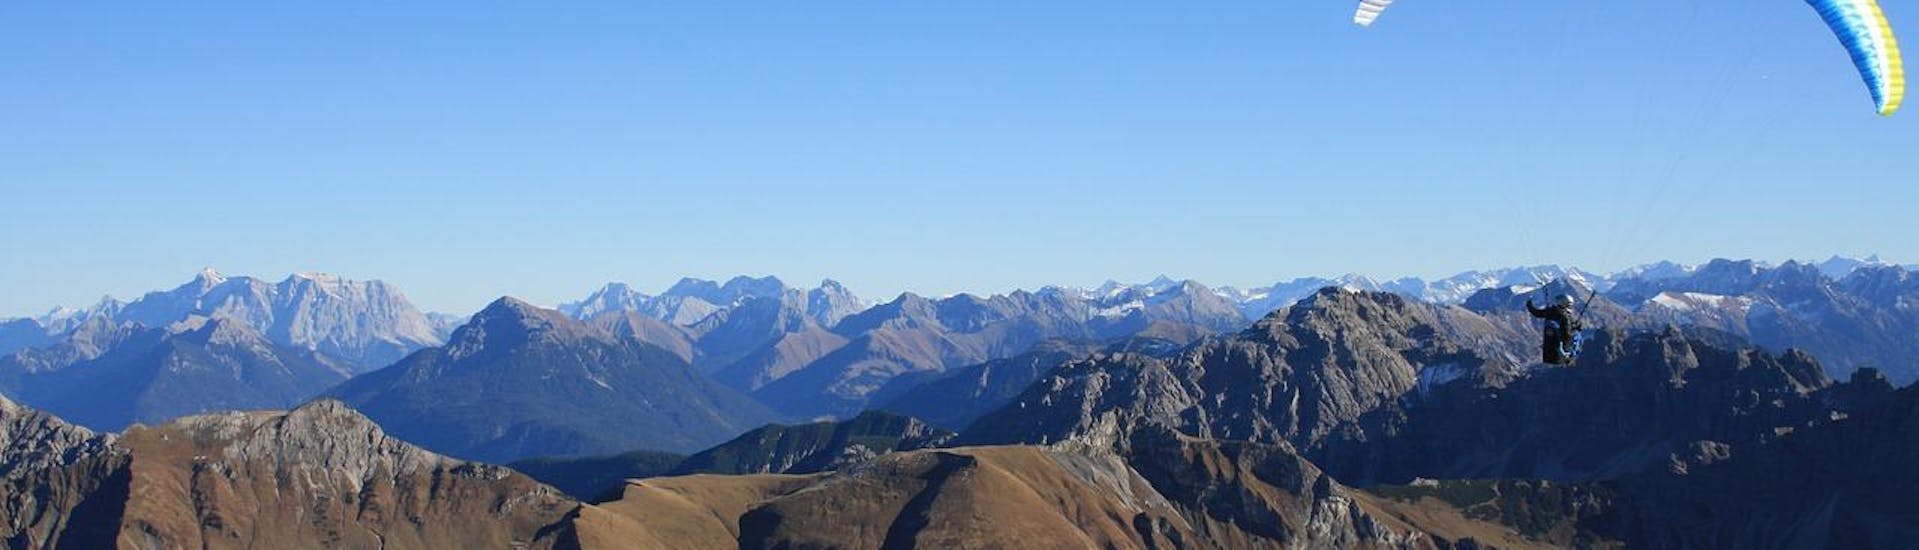 Panorama Tandem Paragliding in Bach - Tiroler Lech Nature Park.